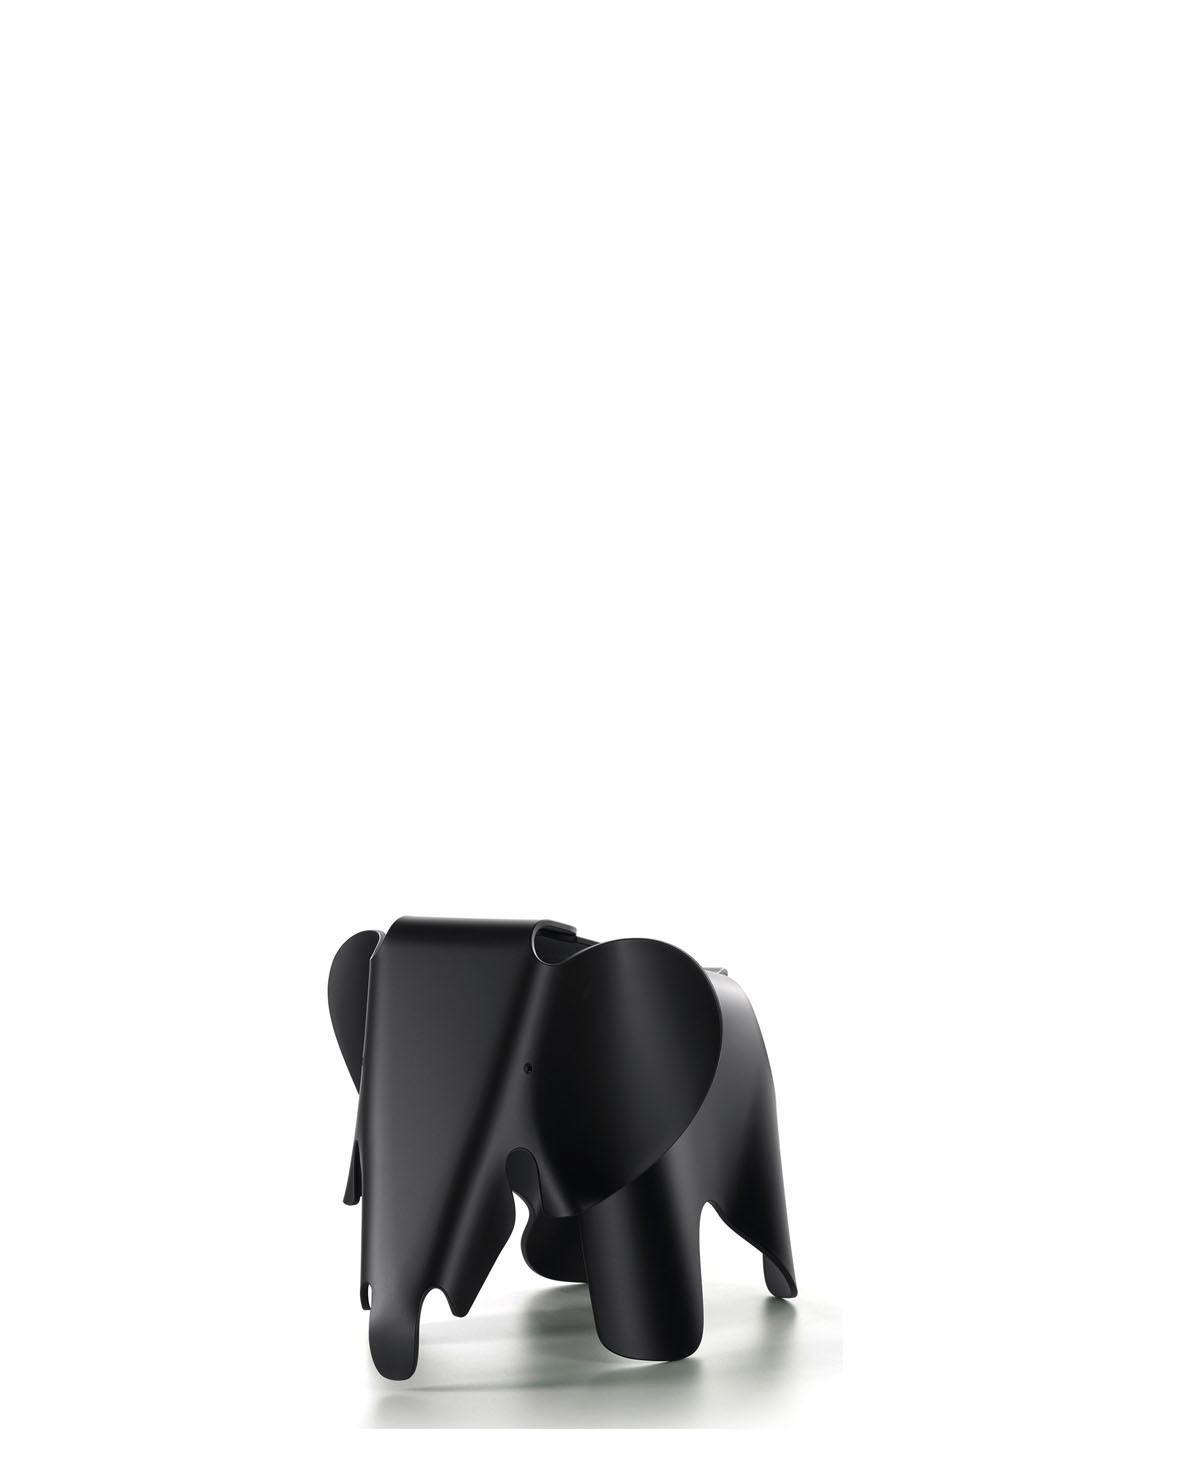 Eames Elephant klein One Size